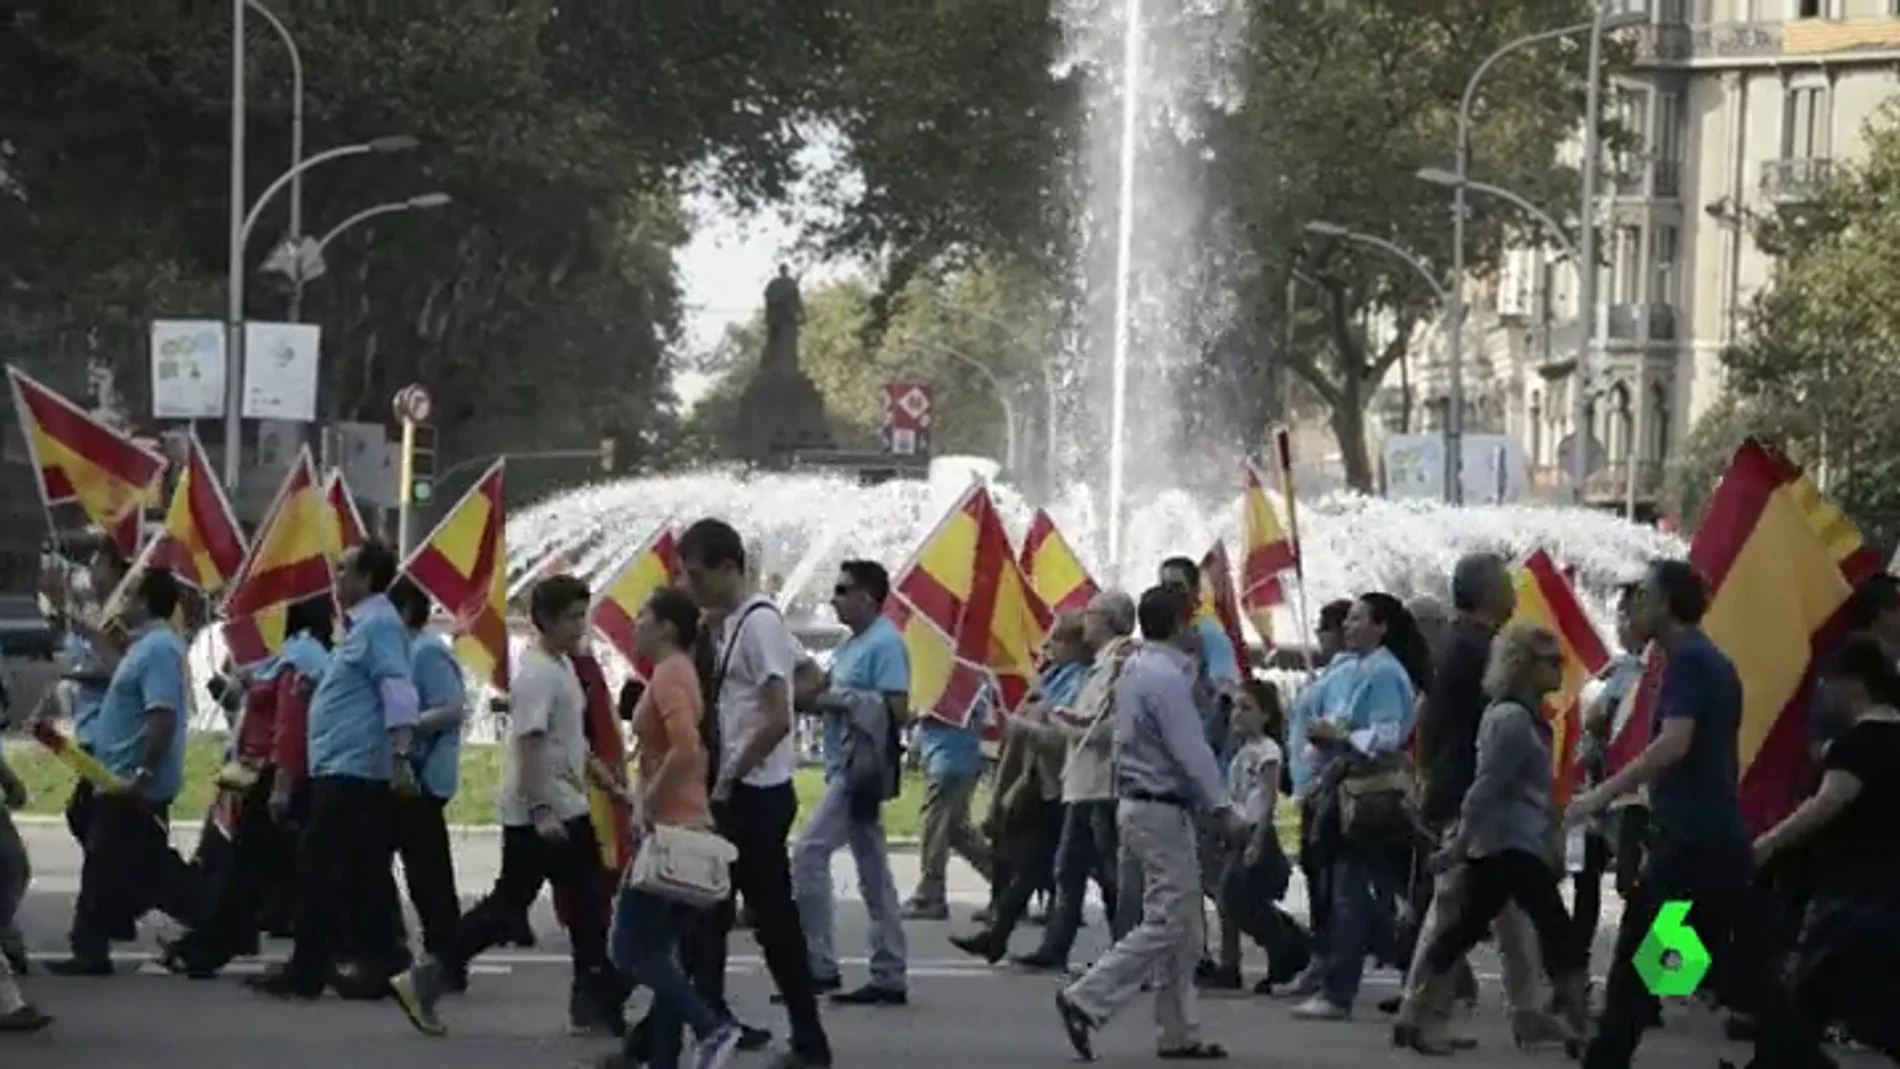 Convocada una gran manifestación a favor de la unidad de España este domingo en Barcelona